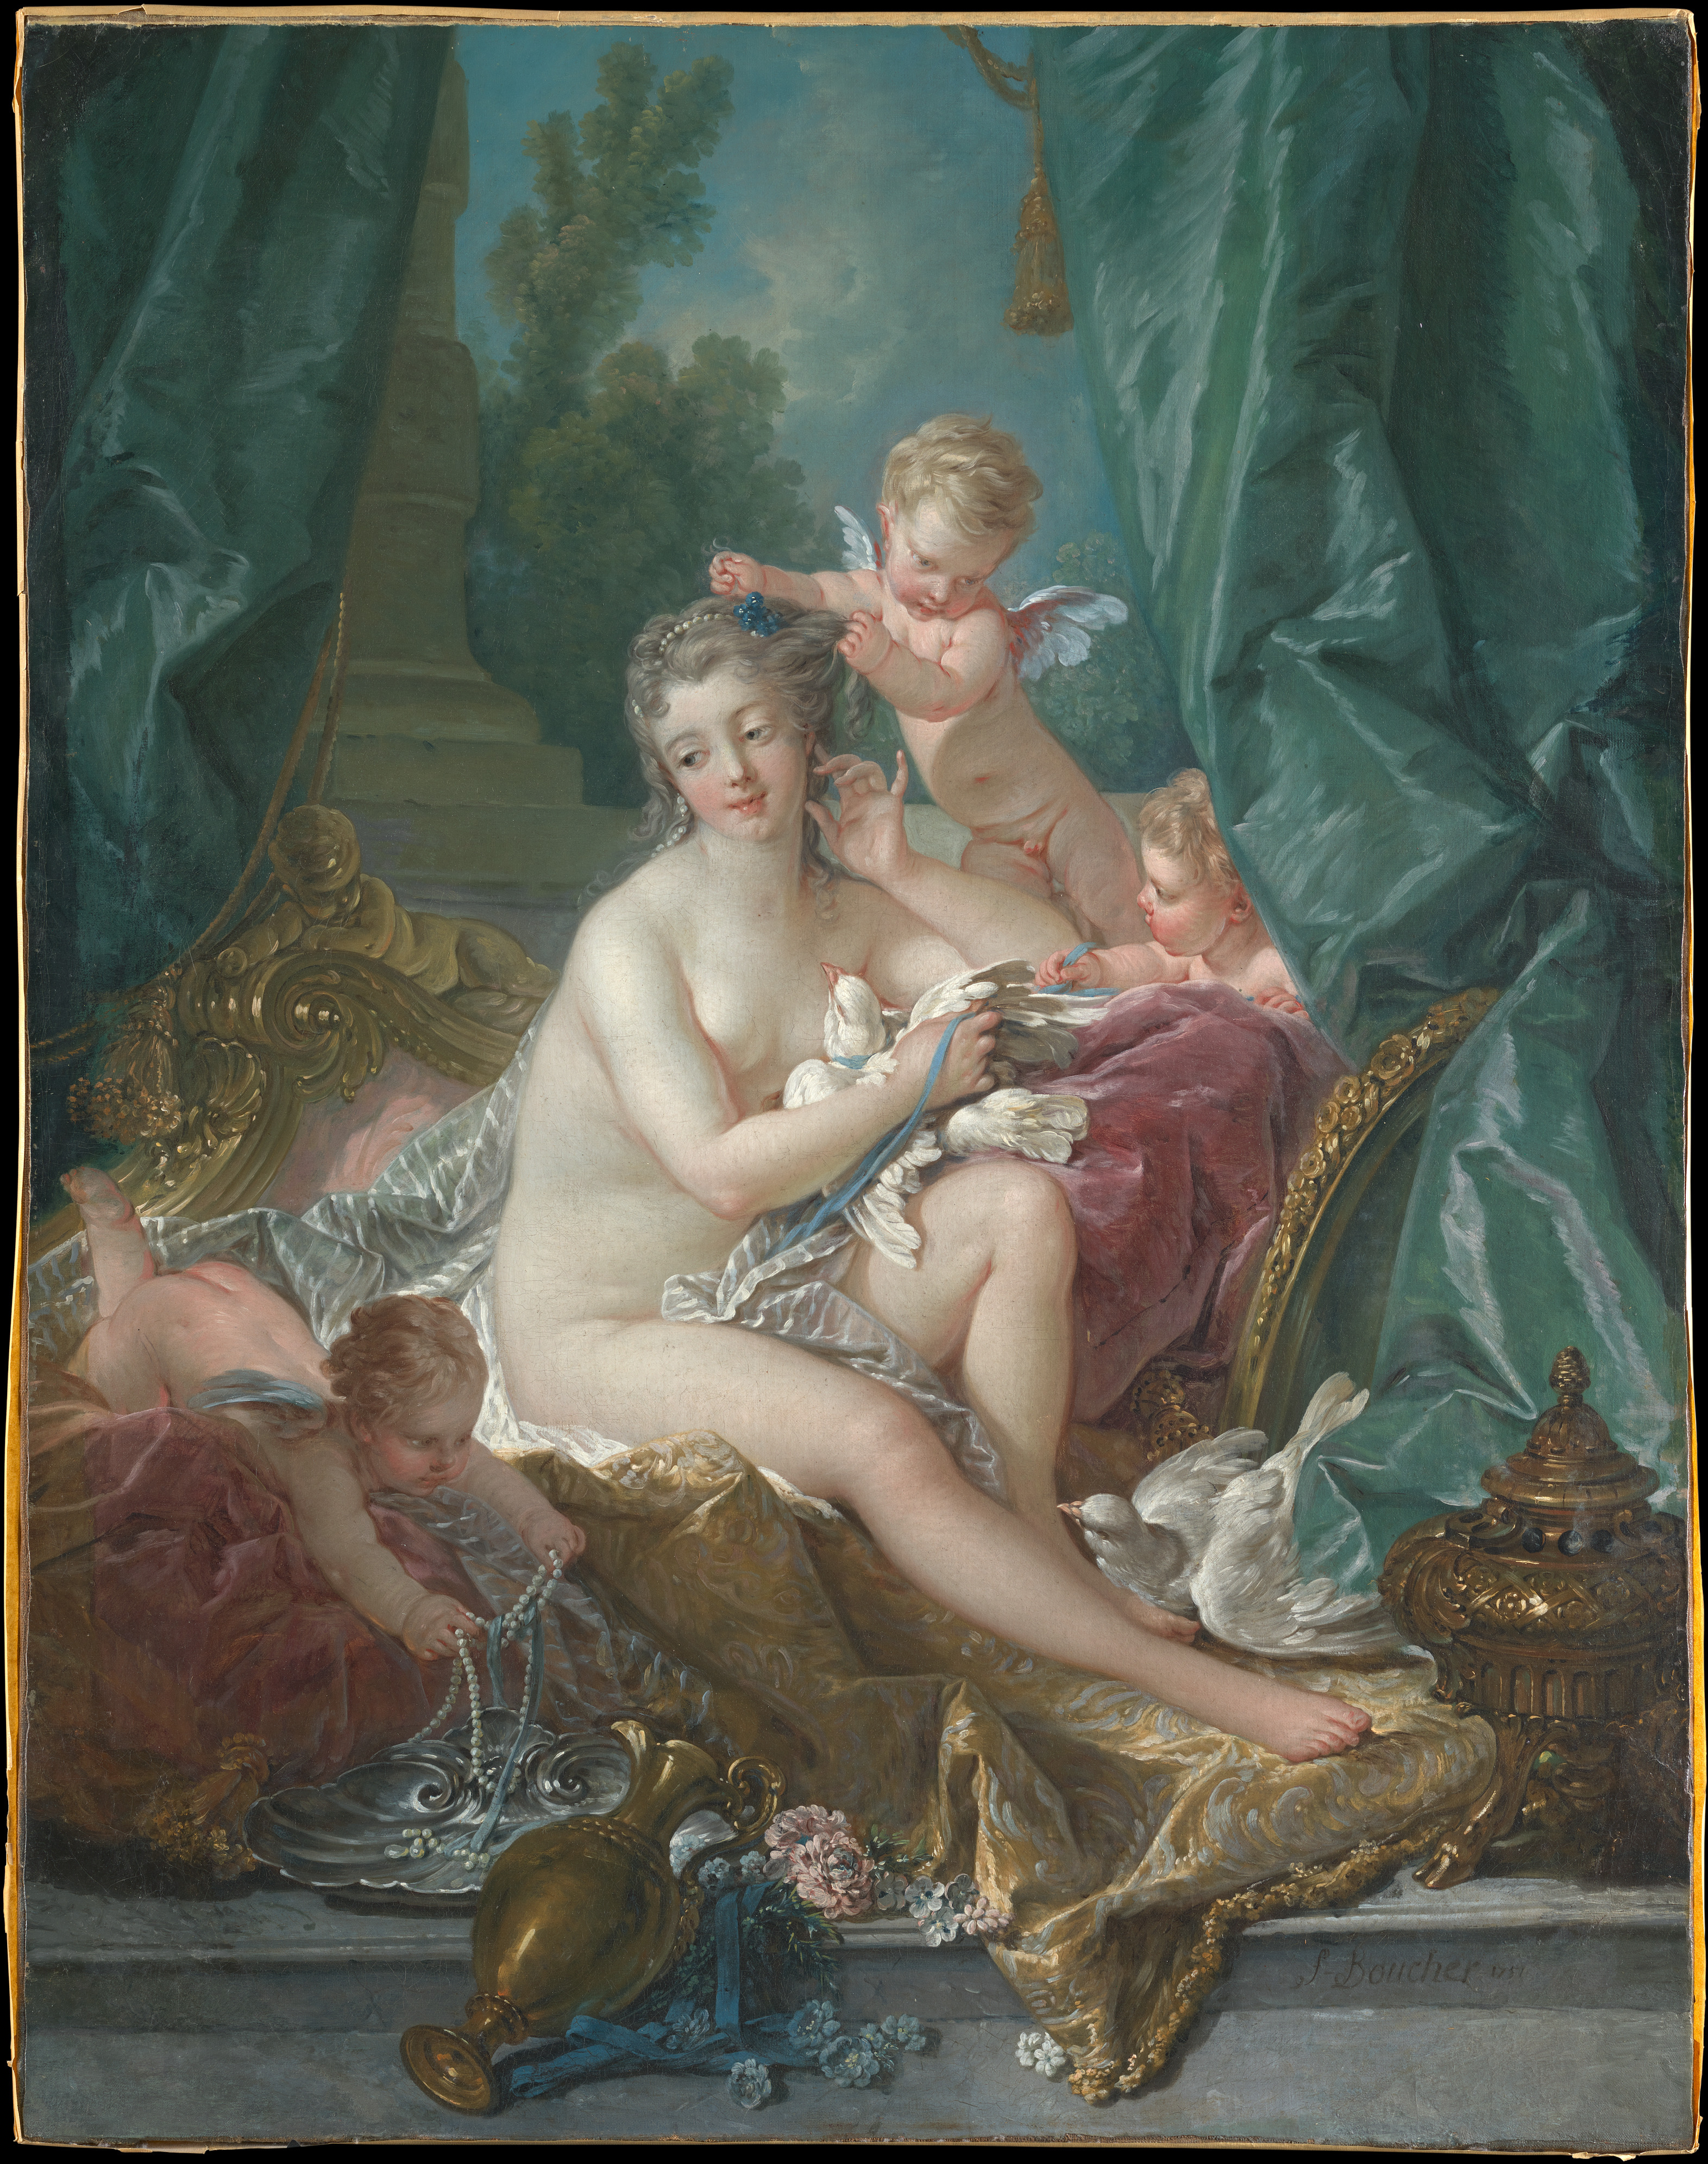 Toaleta lui Venus by Francois Boucher - 1751 - 108,3 x 85,1 cm 